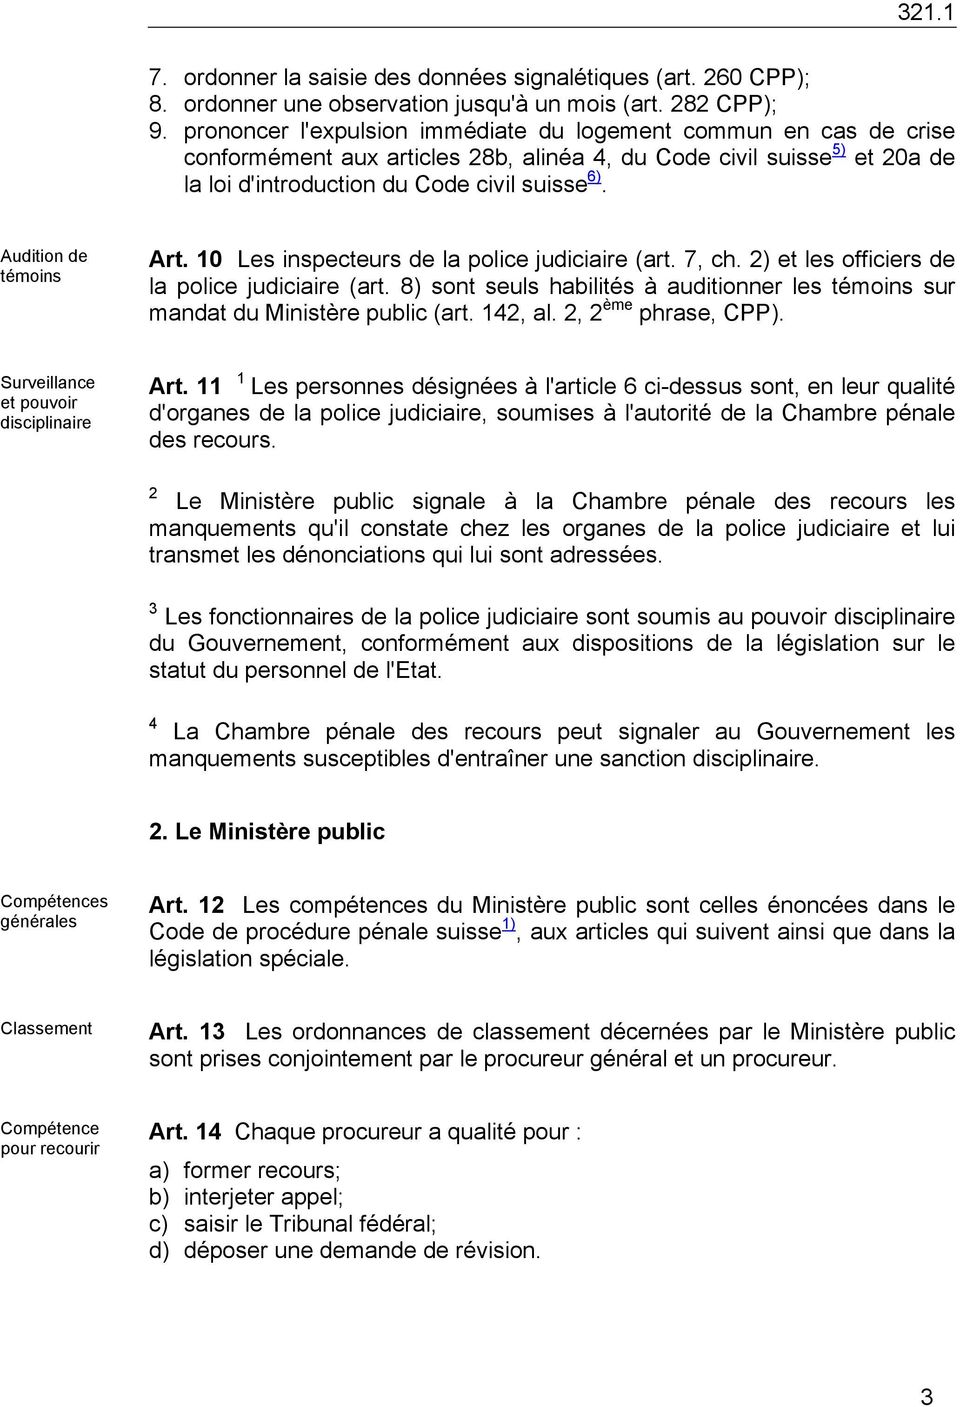 Audition de témoins Art. 10 Les inspecteurs de la police judiciaire (art. 7, ch. 2) et les officiers de la police judiciaire (art.